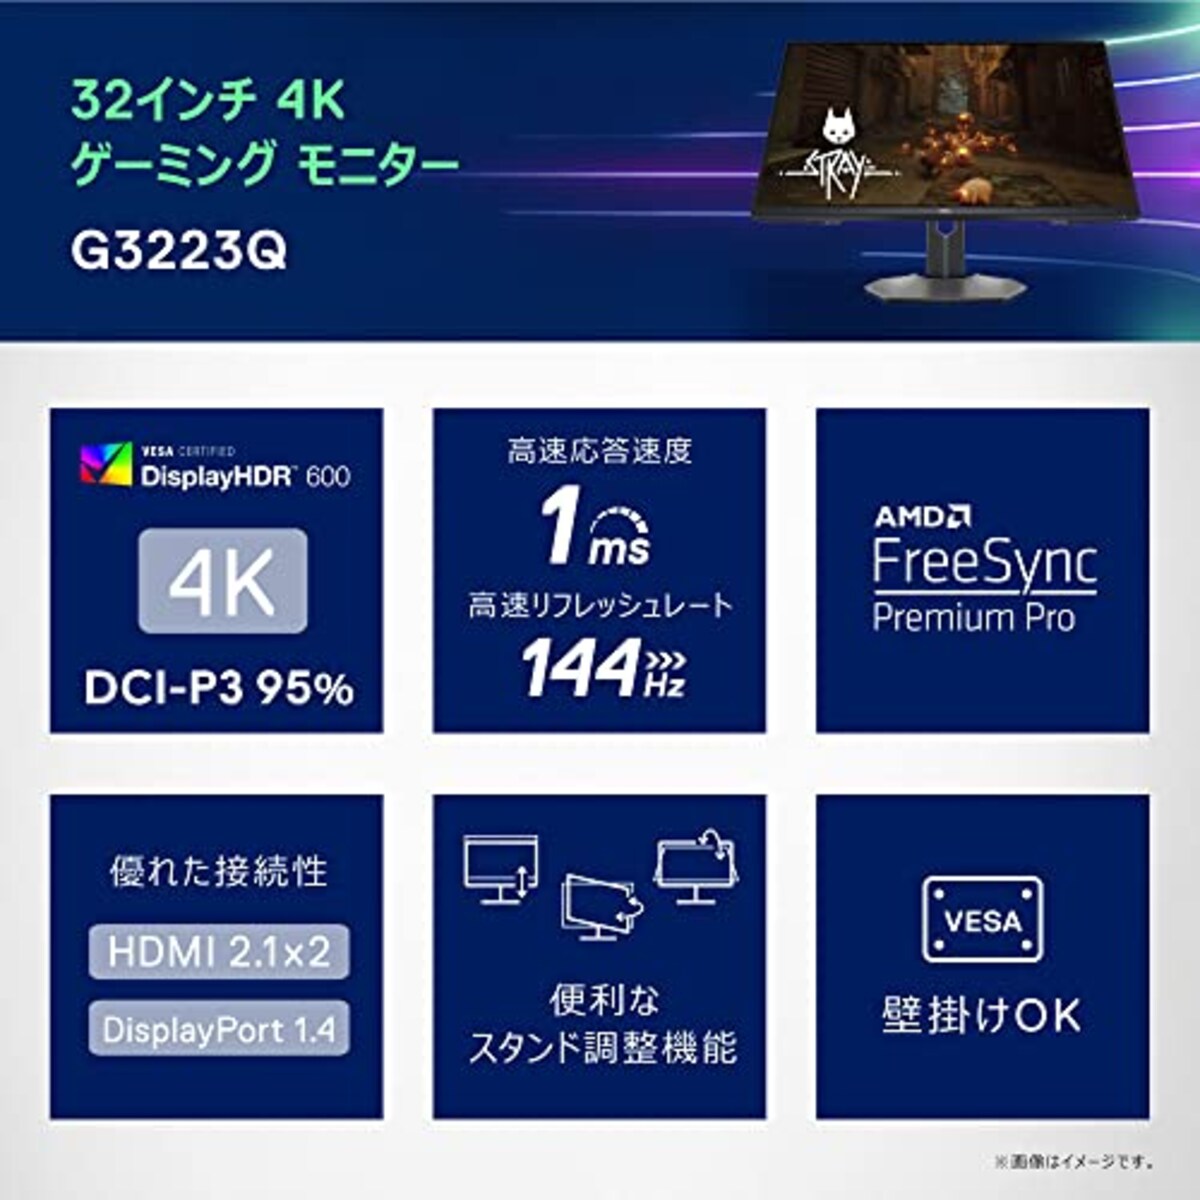  Dell G3223Q 32インチ 4K ゲーミングモニター (FPS向き/1ms/144hz/Fast IPS/DP・HDMIx2/DCI-P3 95%/高さ調整/VESA DisplayHDR 600/AMD FreeSync Premium Pro)画像6 